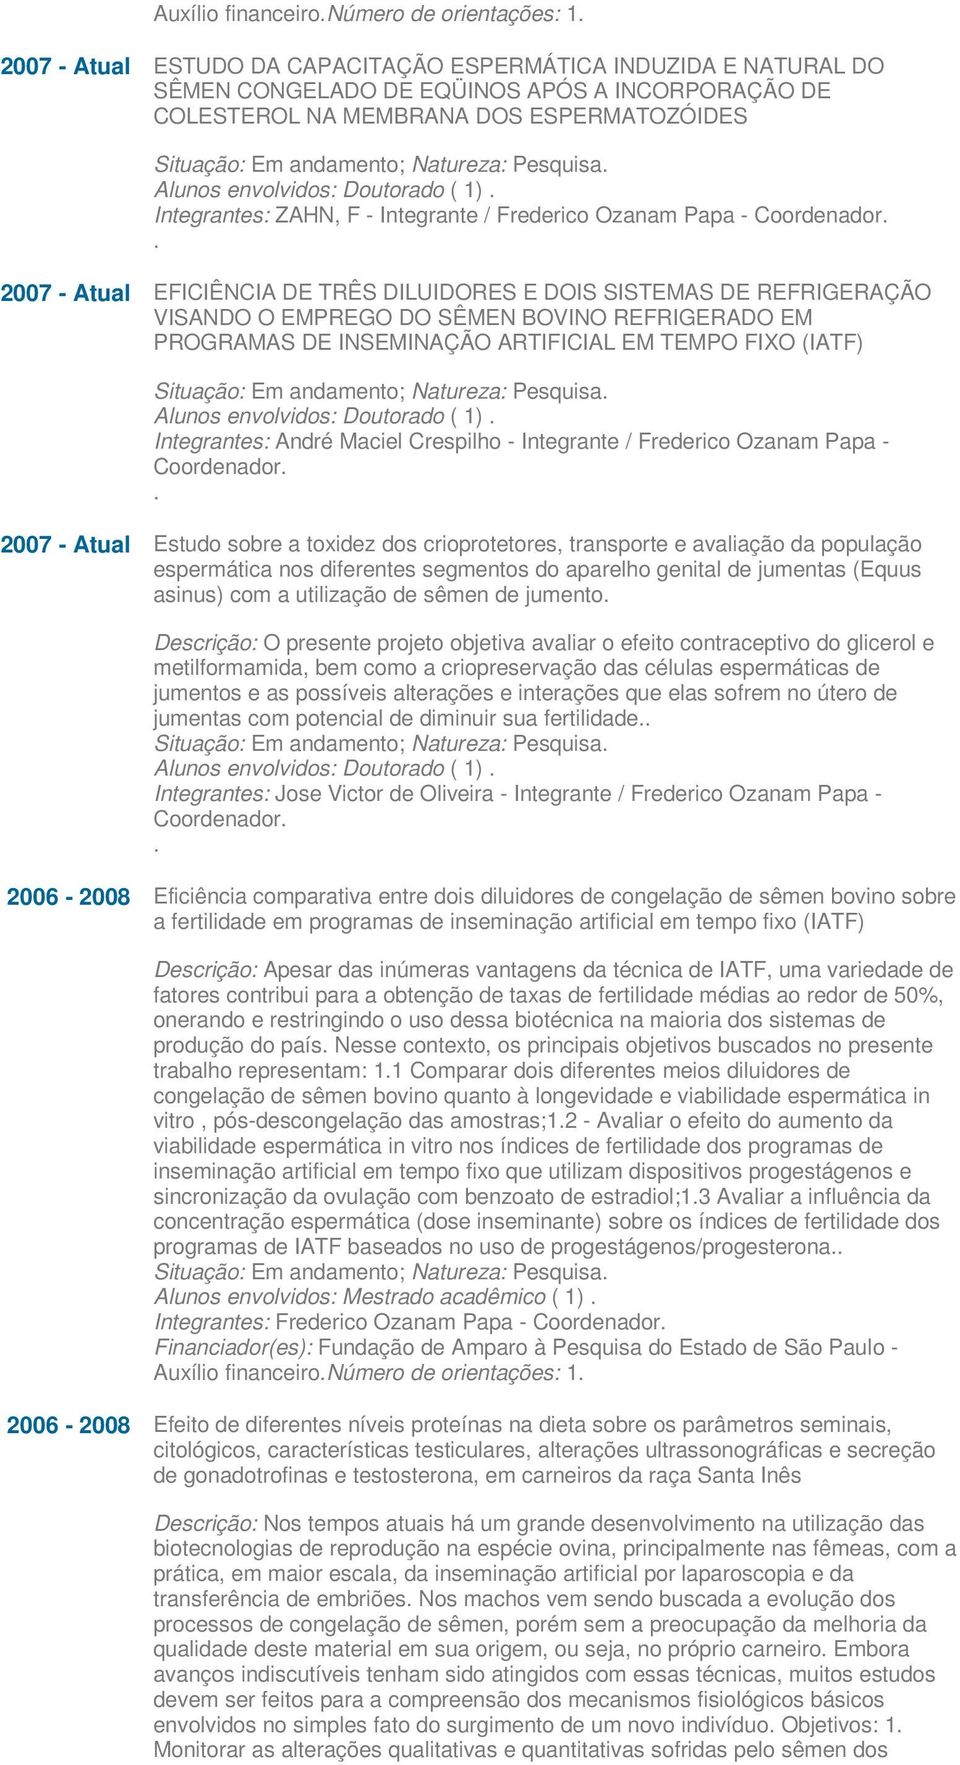 Pesquisa. Alunos envolvidos: Doutorado ( 1). Integrantes: ZAHN, F - Integrante / Frederico Ozanam Papa - Coordenador.